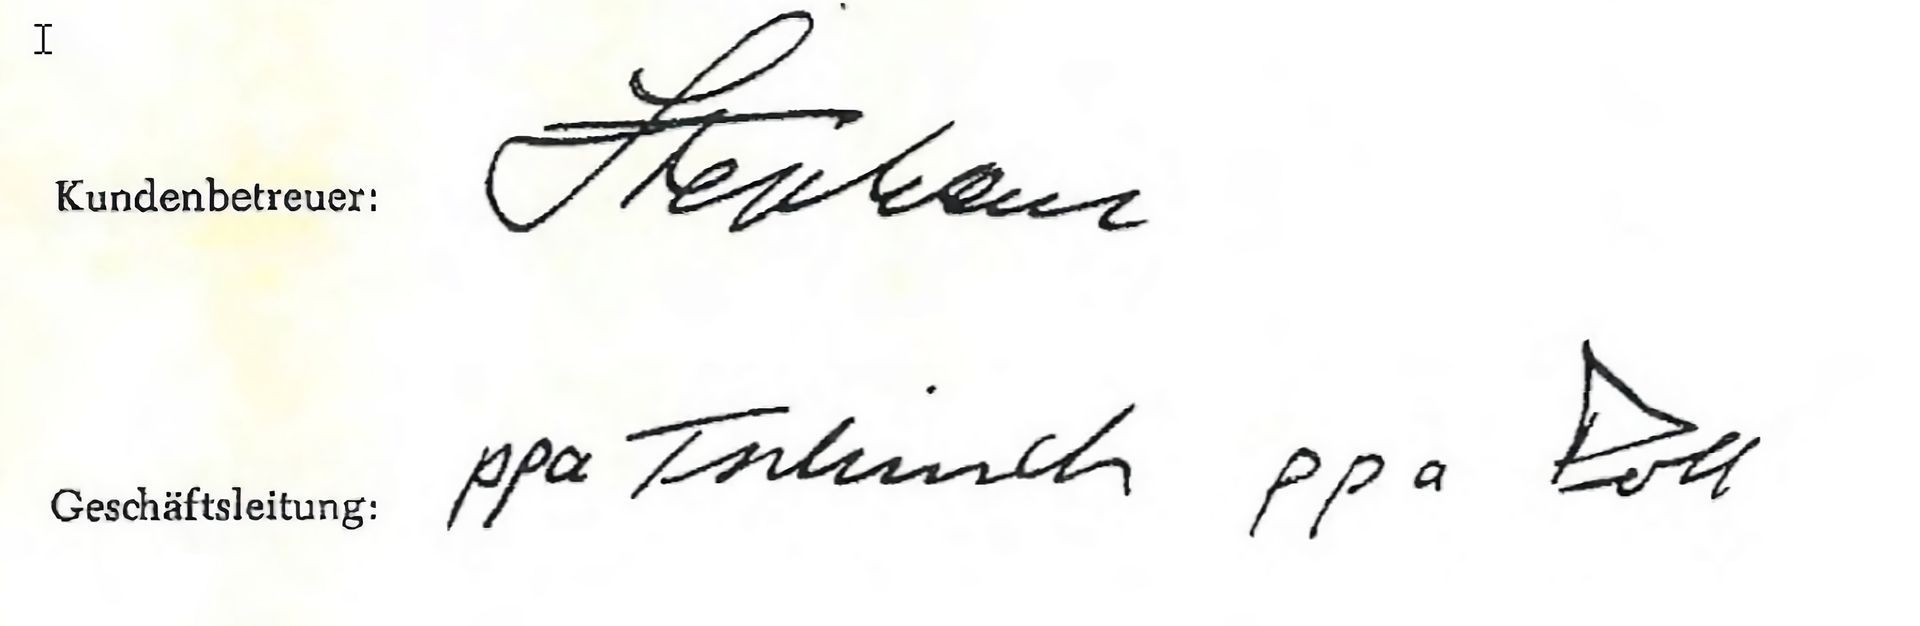 Fahti_Brief_1966_Unterschriften